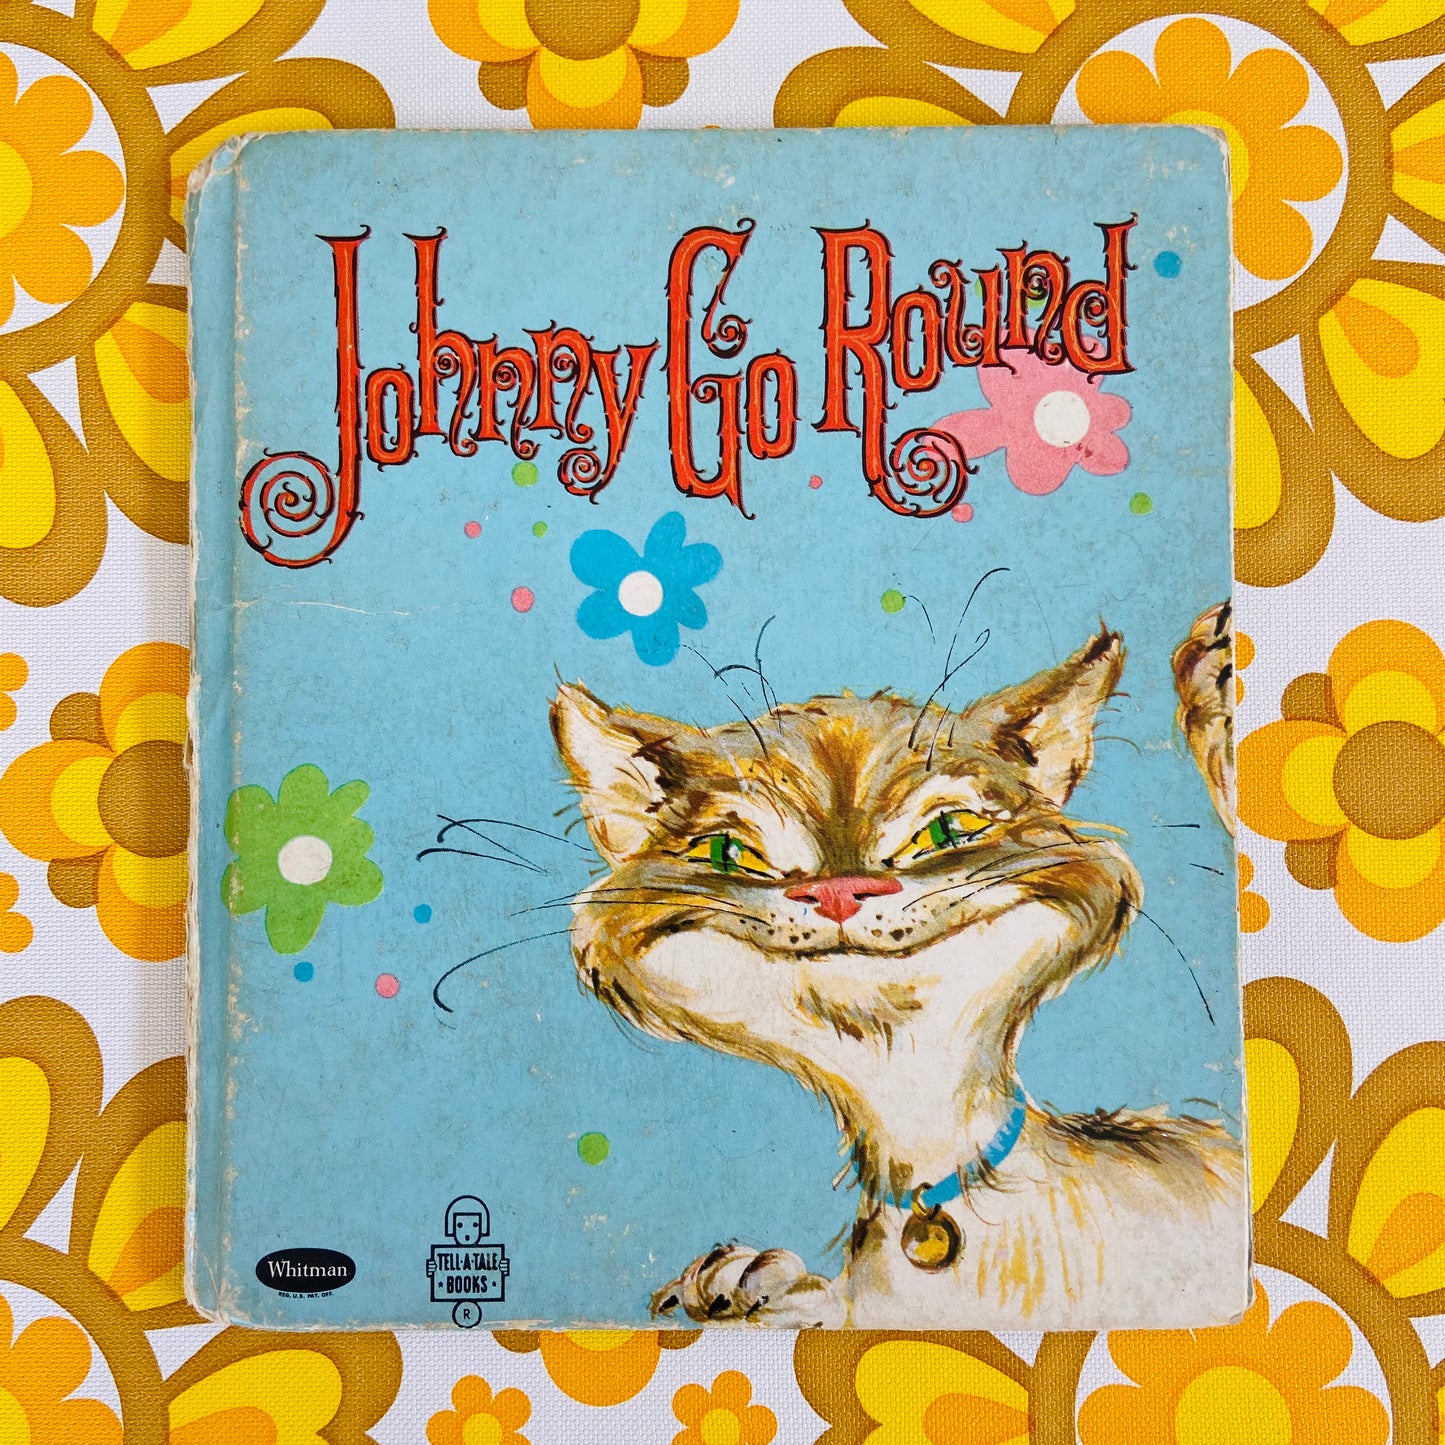 Delightful Little Vintage Children's Book Johnny Go Round Betty Ren Wright